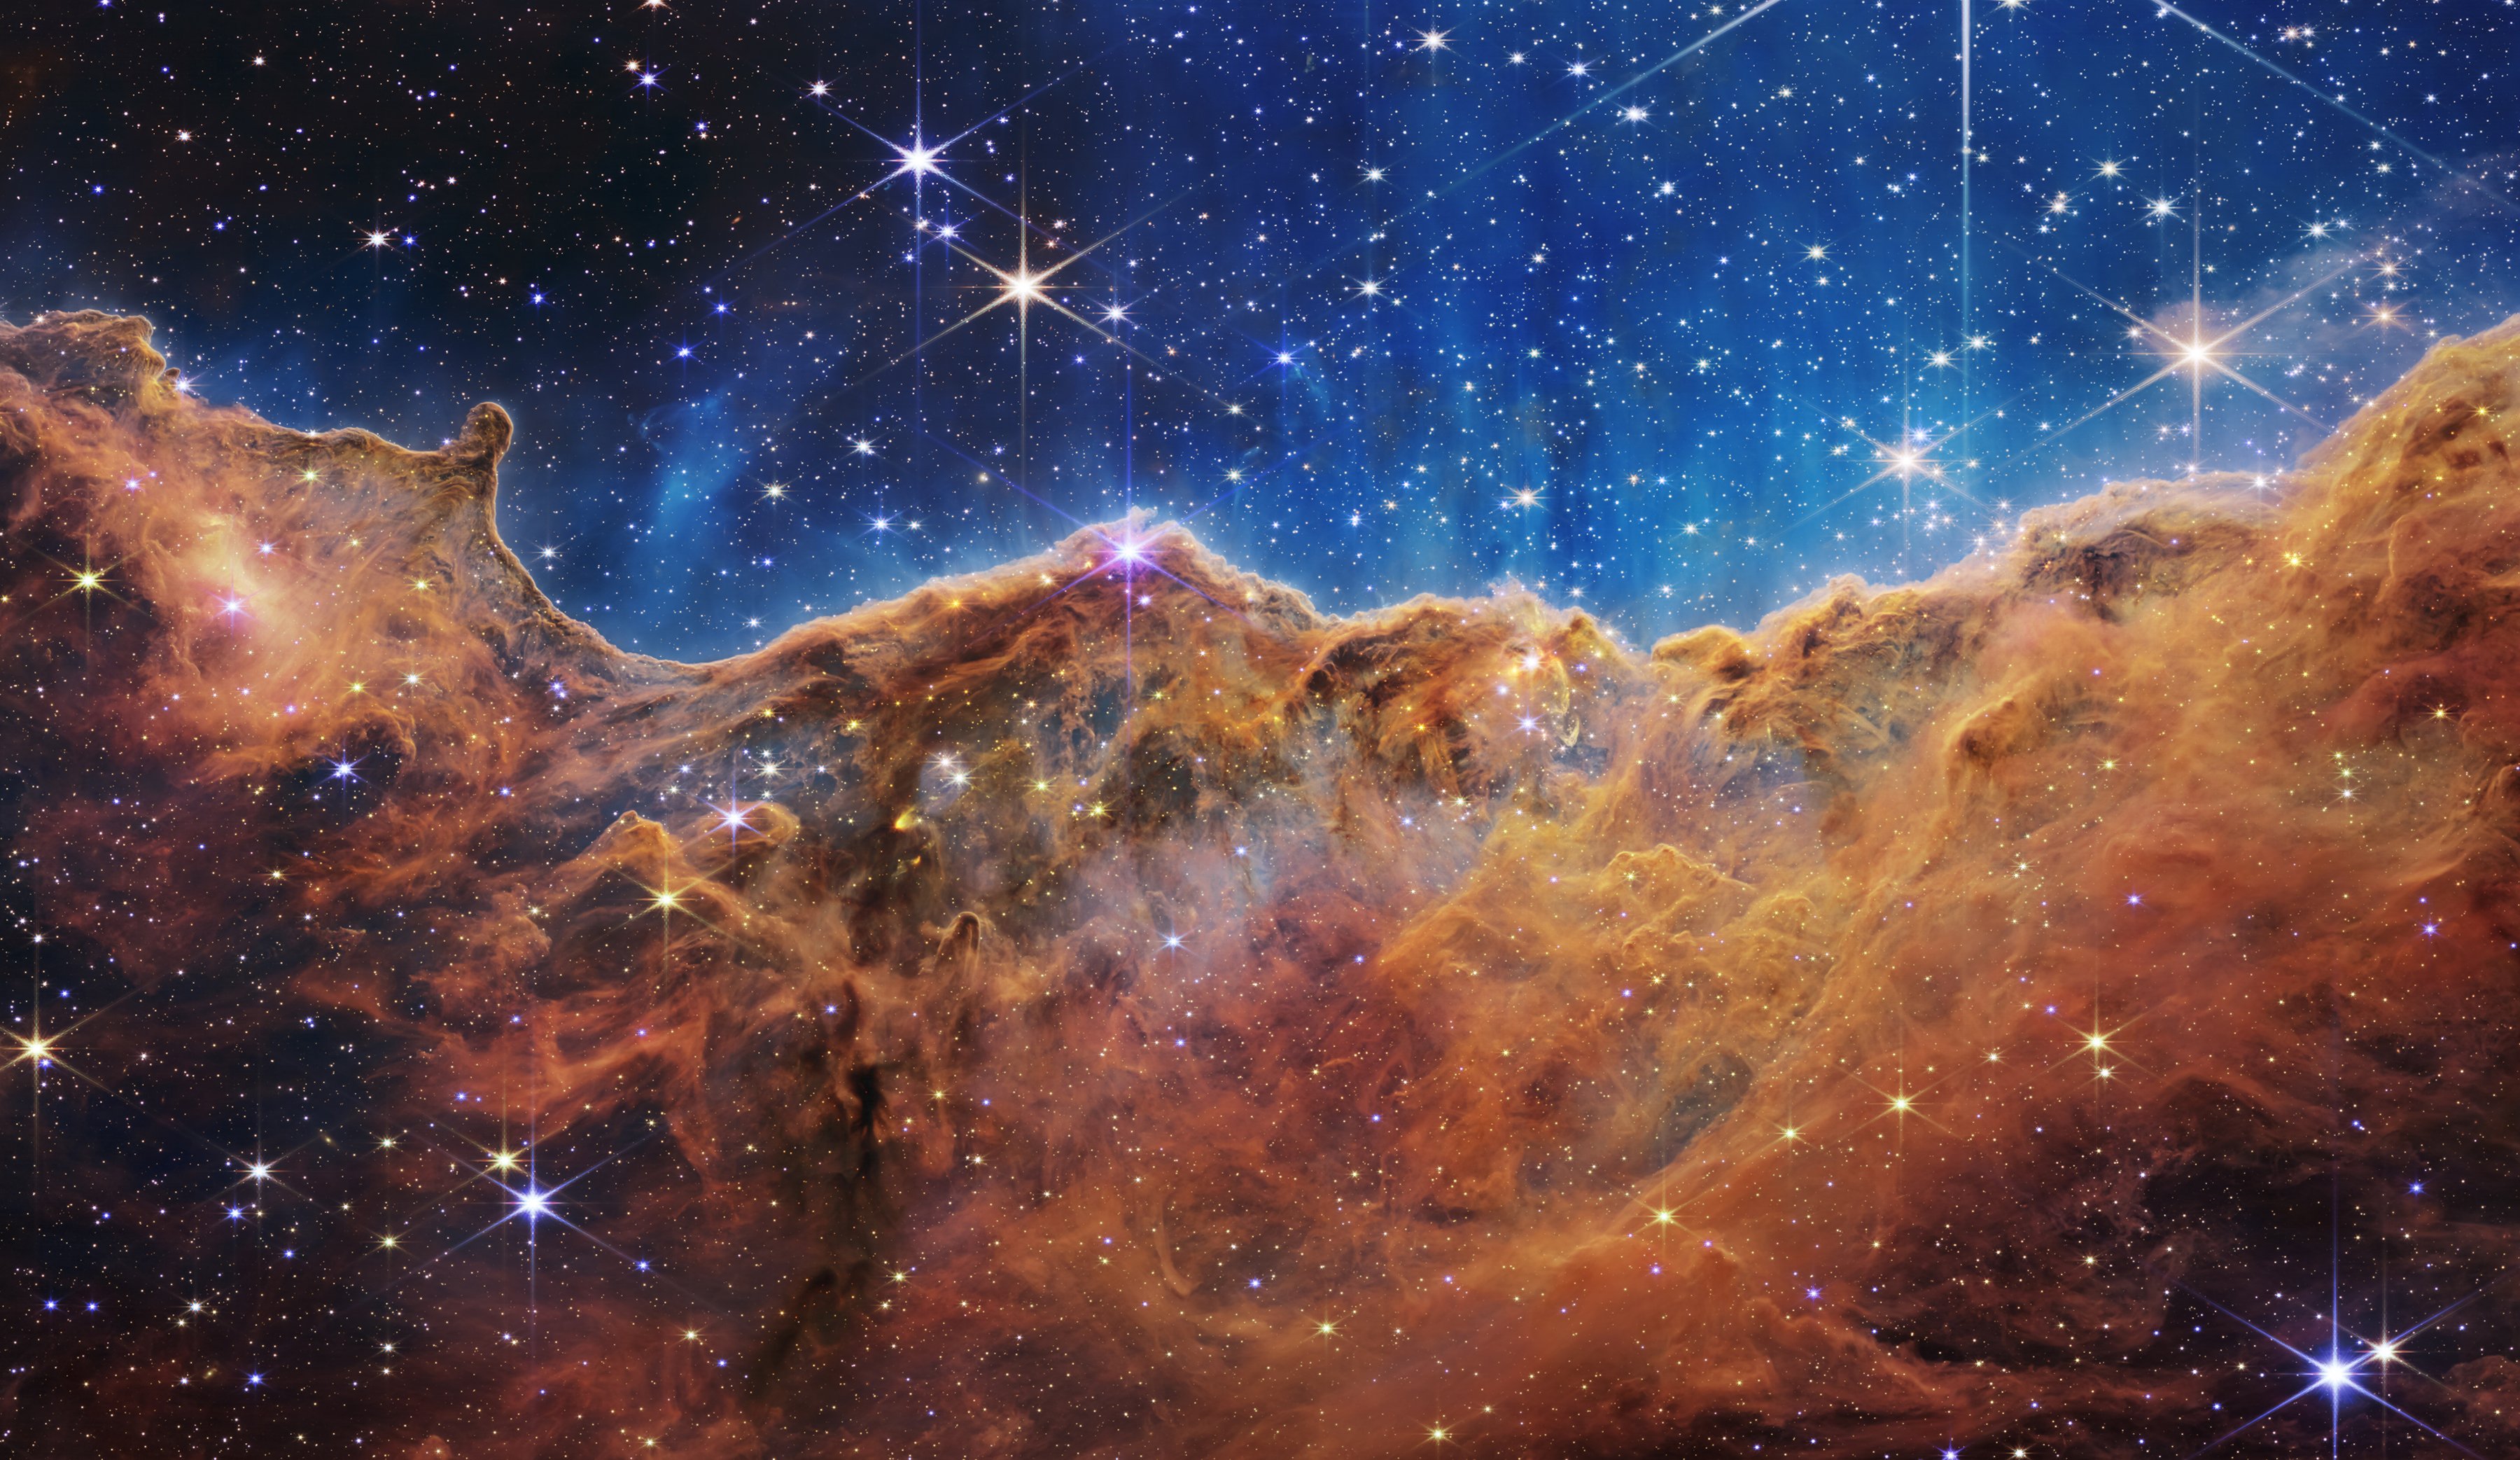 Kính viễn vọng James Webb sẽ cho phép bạn nhìn thấy vũ trụ một cách rõ ràng như chưa bao giờ trước đây. Hãy bắt đầu cuộc hành trình khám phá và đắm mình trong những hình ảnh đẹp nhất mà nó mang đến.